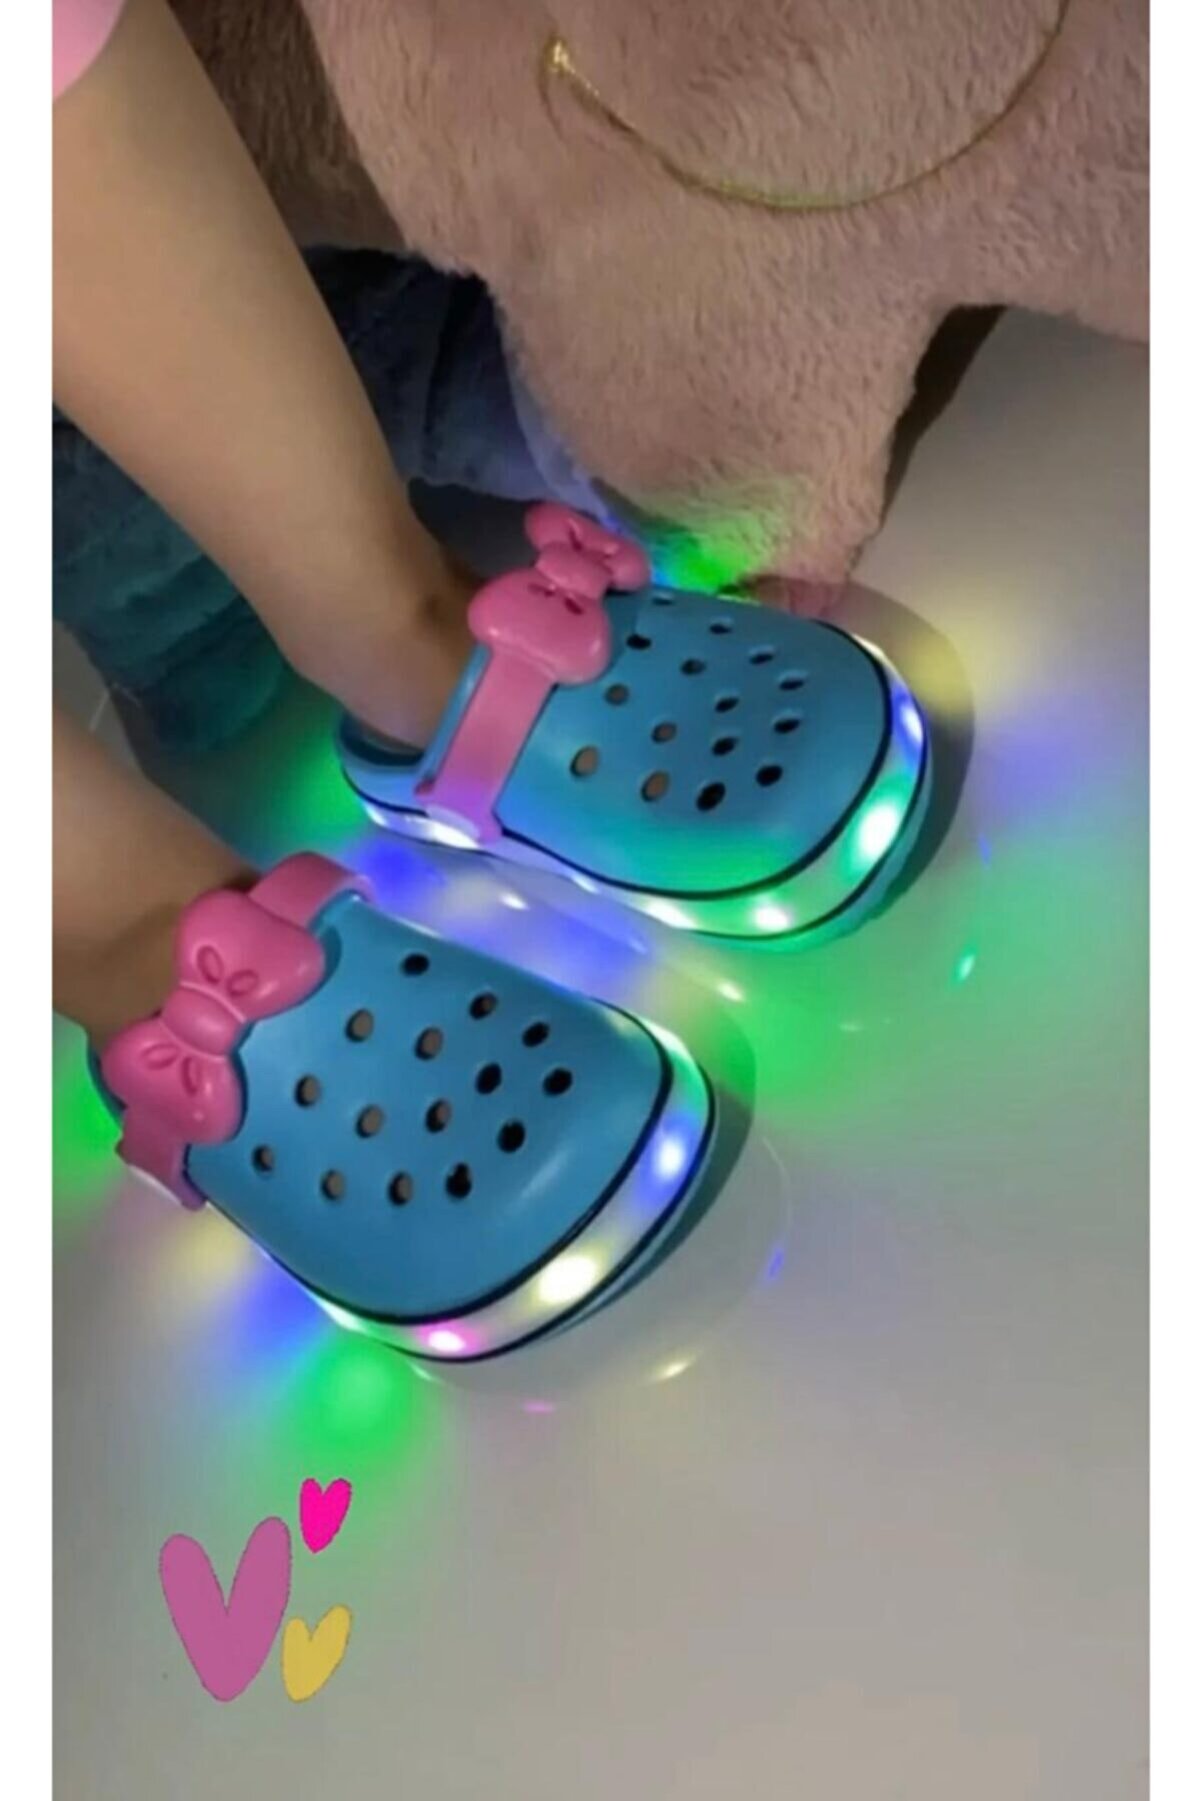 Akınal Bella Kız Çocuk Kız Bebek Mint Pembe Crocs Tipi Tabanı Renkli Işıklı Terlik Sandalet